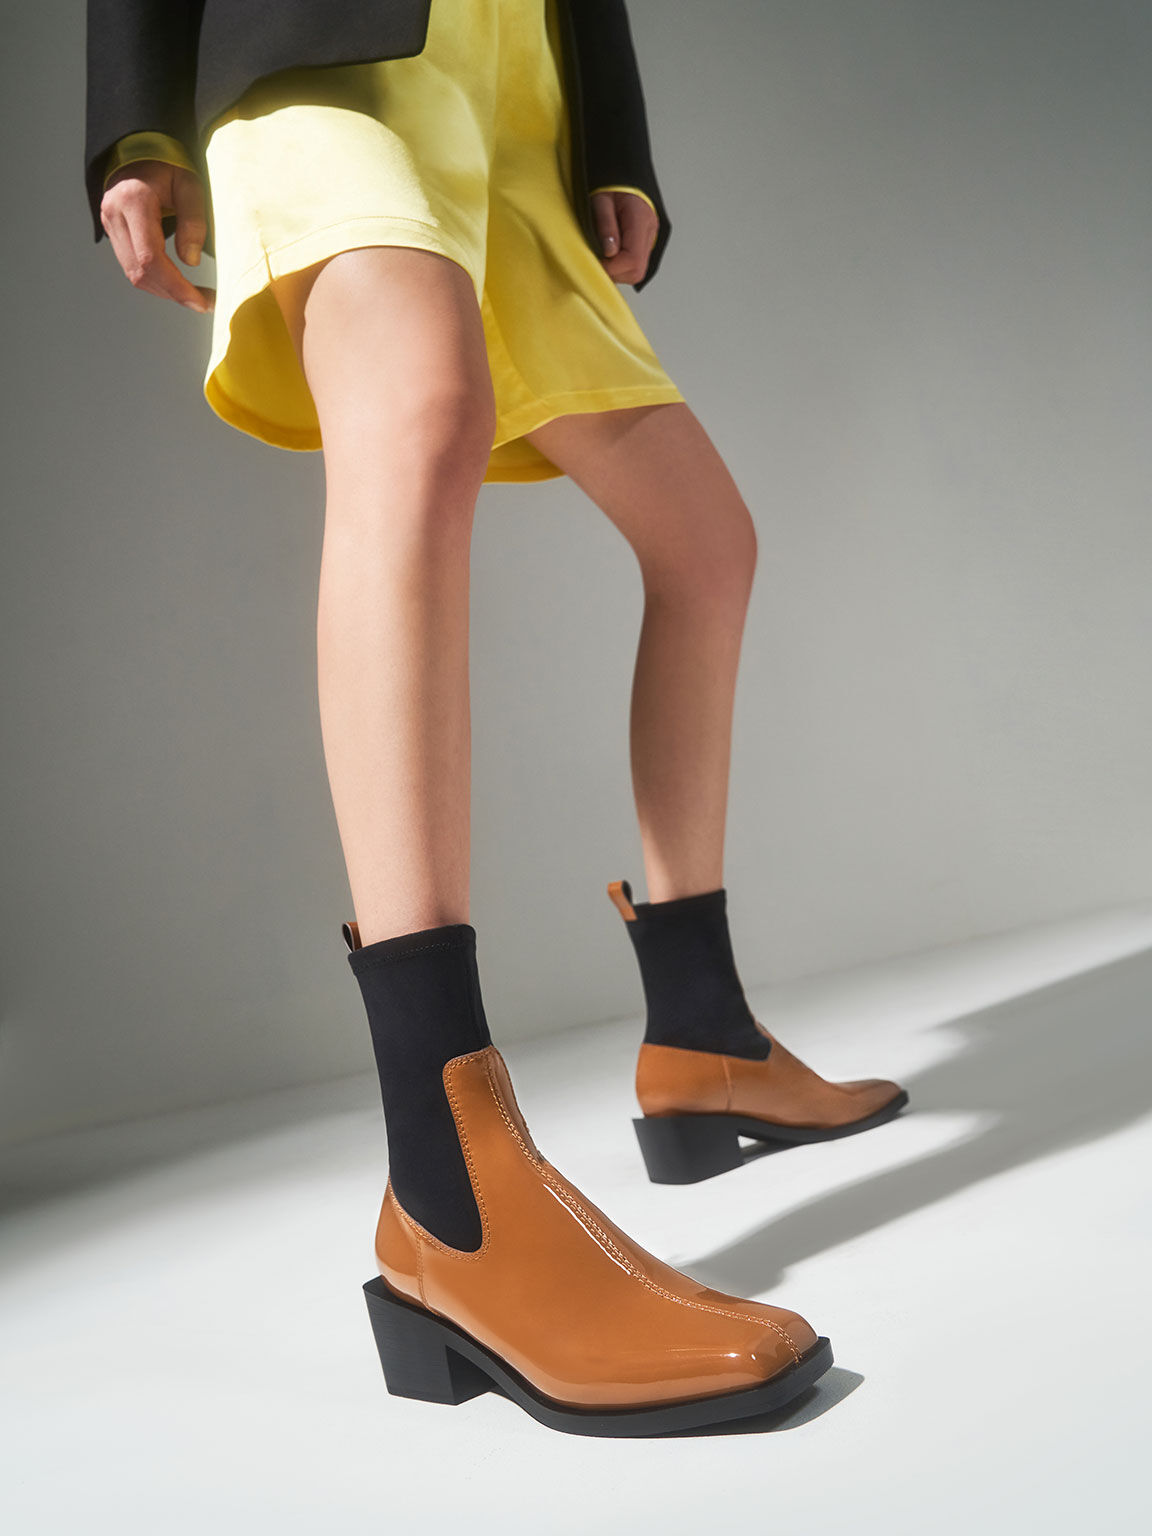 Patent Two-Tone Sock Boots, Caramel, hi-res